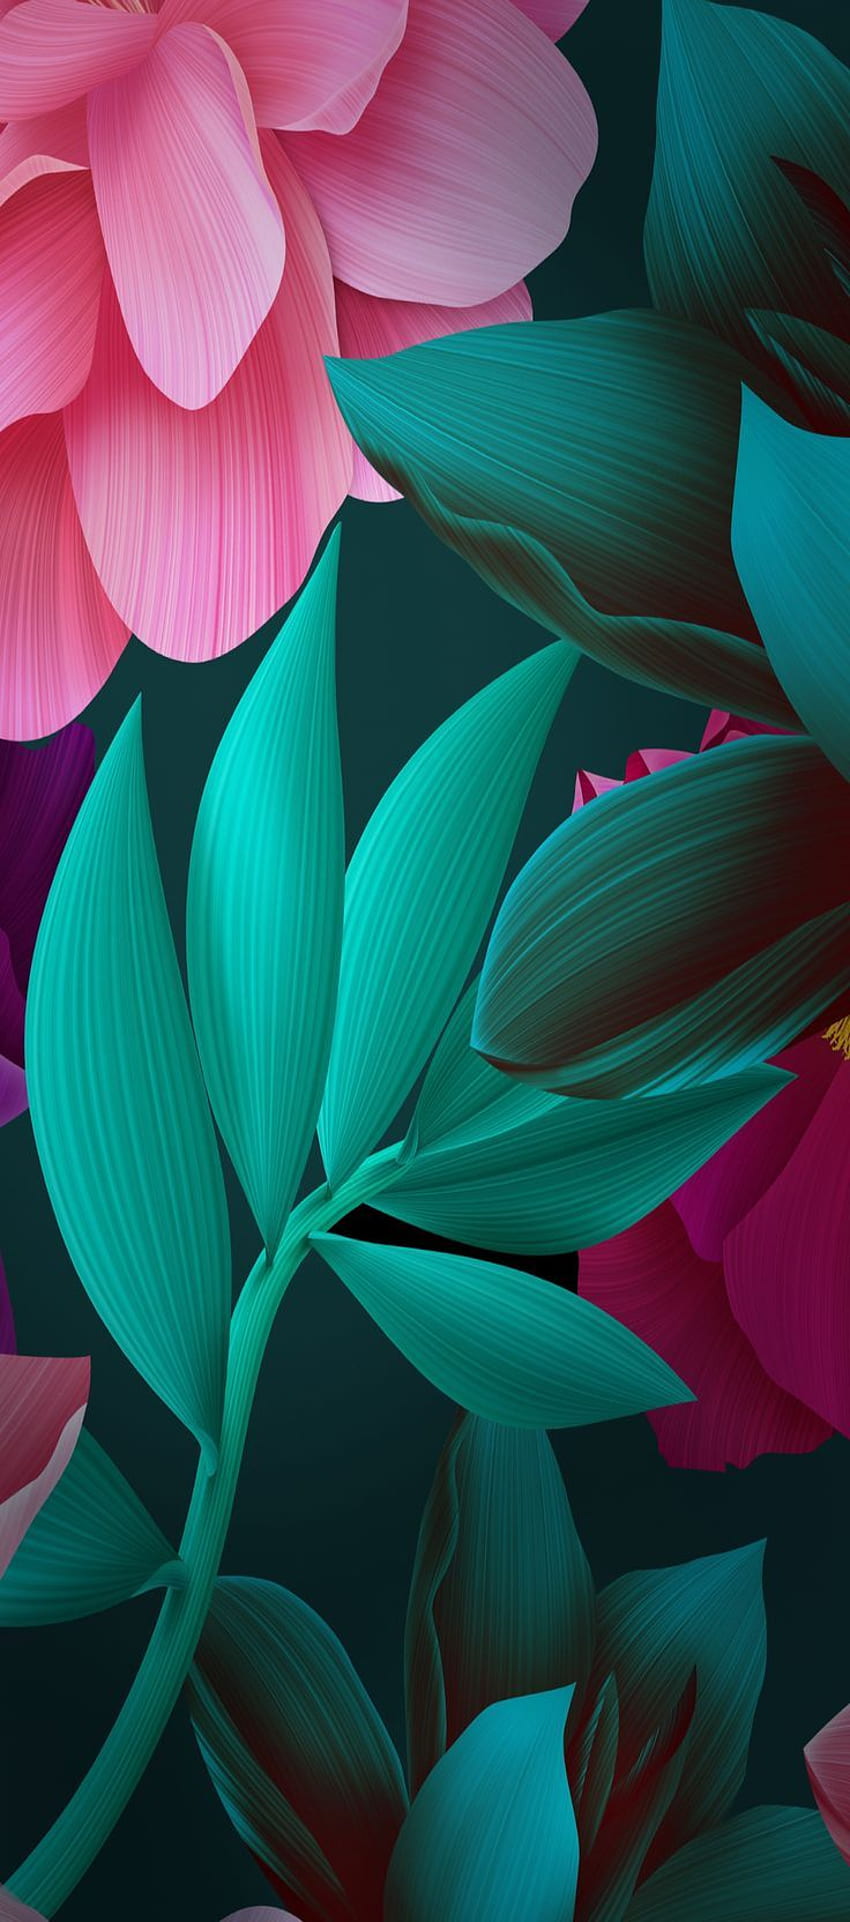 iOS 11, iPhone X, hijau, hitam, merah muda, bunga, tumbuhan, sederhana, abstrak, apel,, iphone 8, bersih, indah. Цветочные фоны, Абстрактное, Bunga Abstrak Hitam dan Merah Muda wallpaper ponsel HD